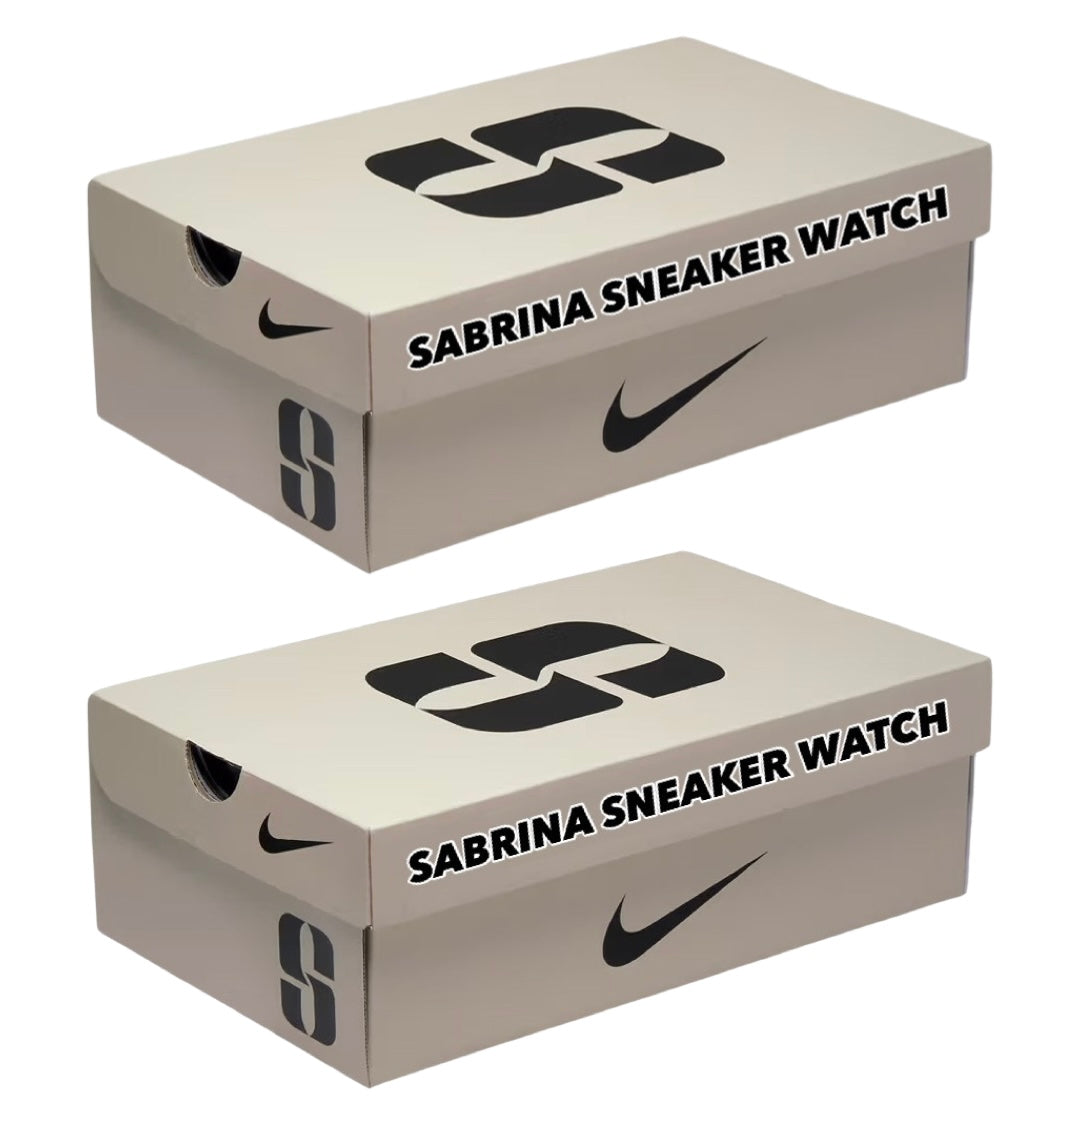 Sabrina Sneaker Watch Vinyl Stickers (2 pack)